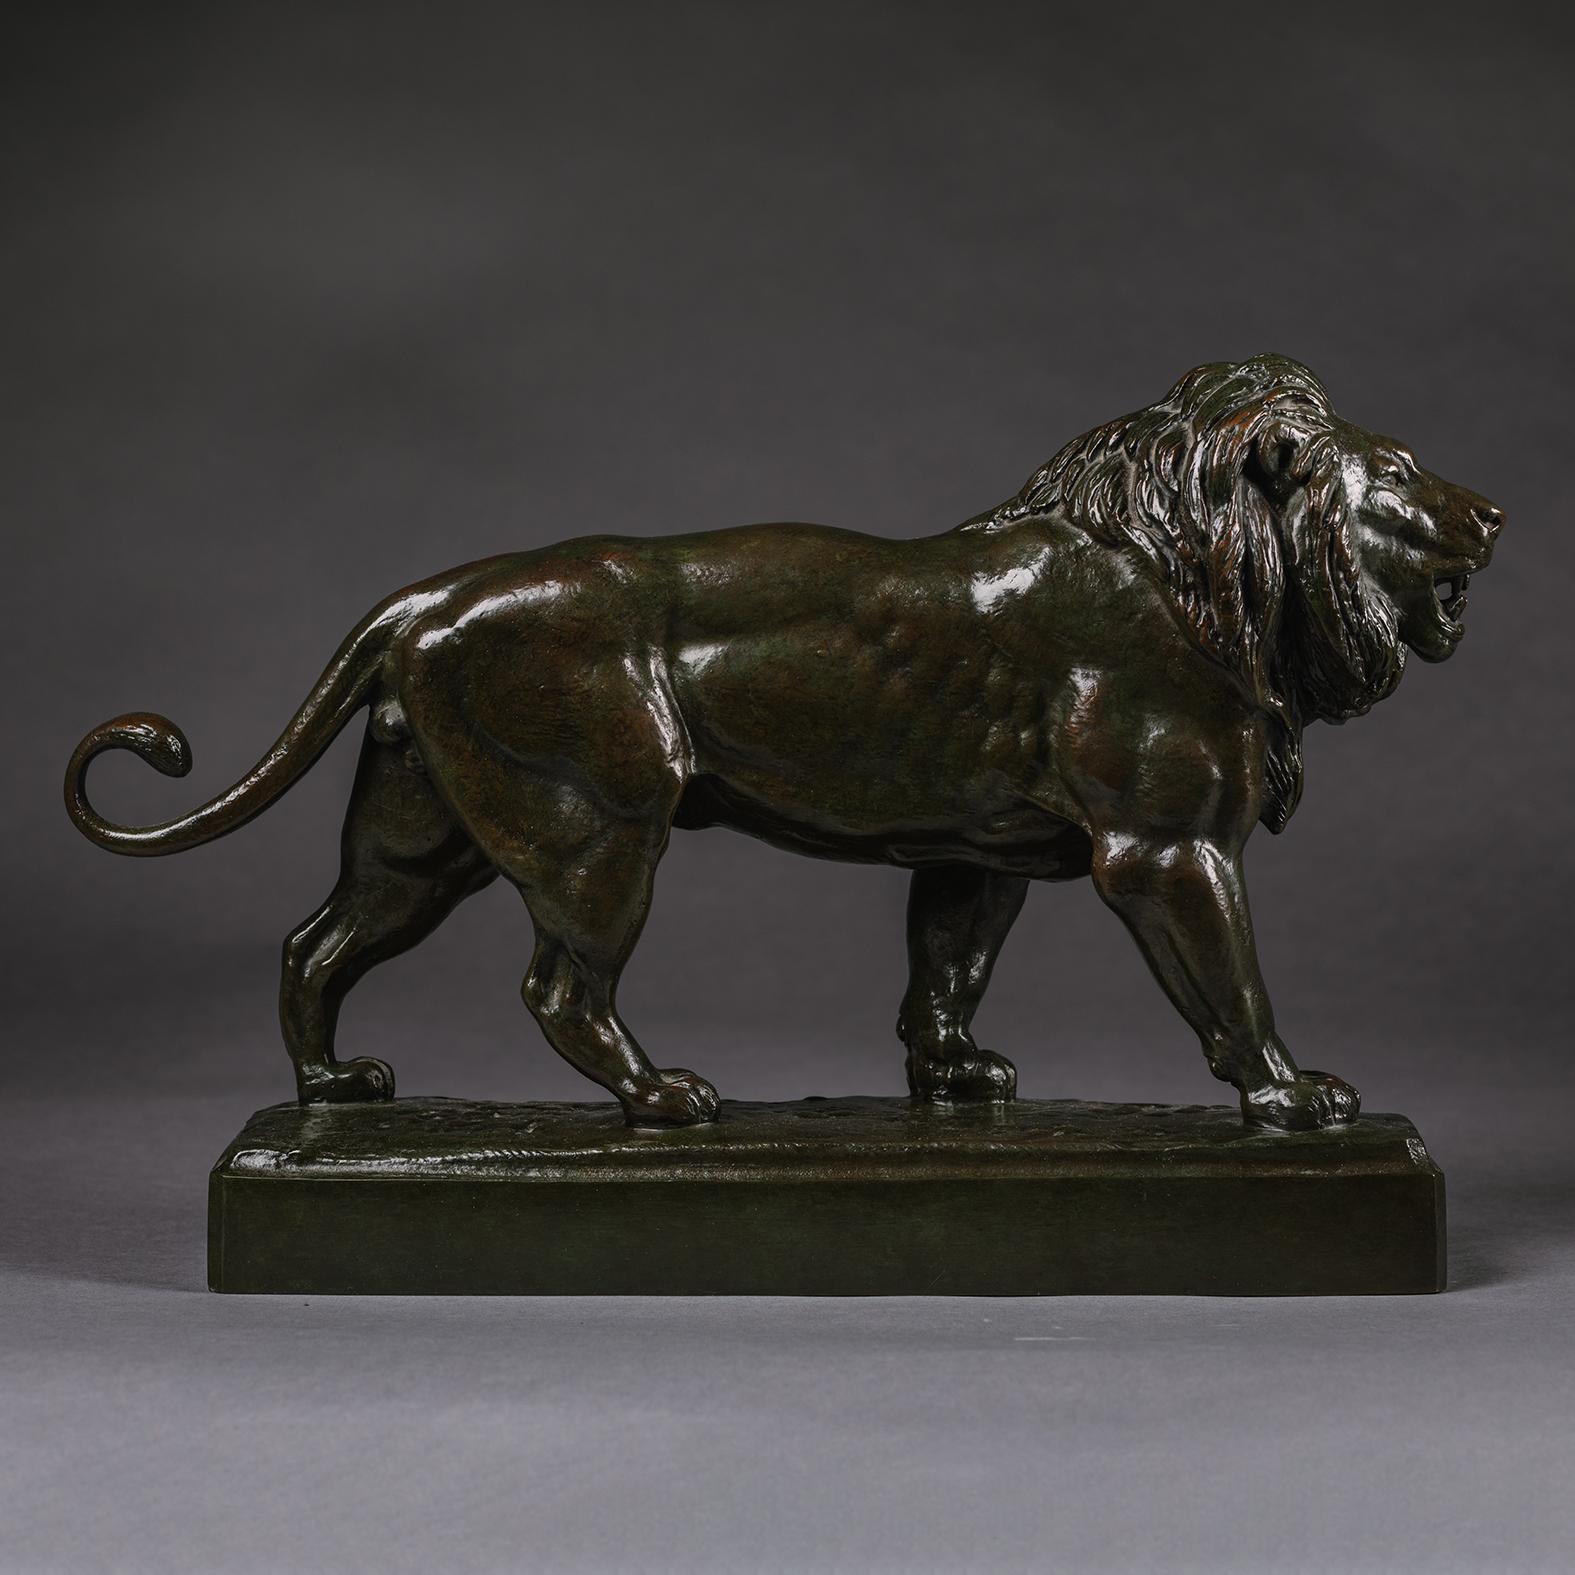 Antoine-Louis Barye (français, 1795-1875) 
Lion marchant

bronze avec patine brun foncé

signé 